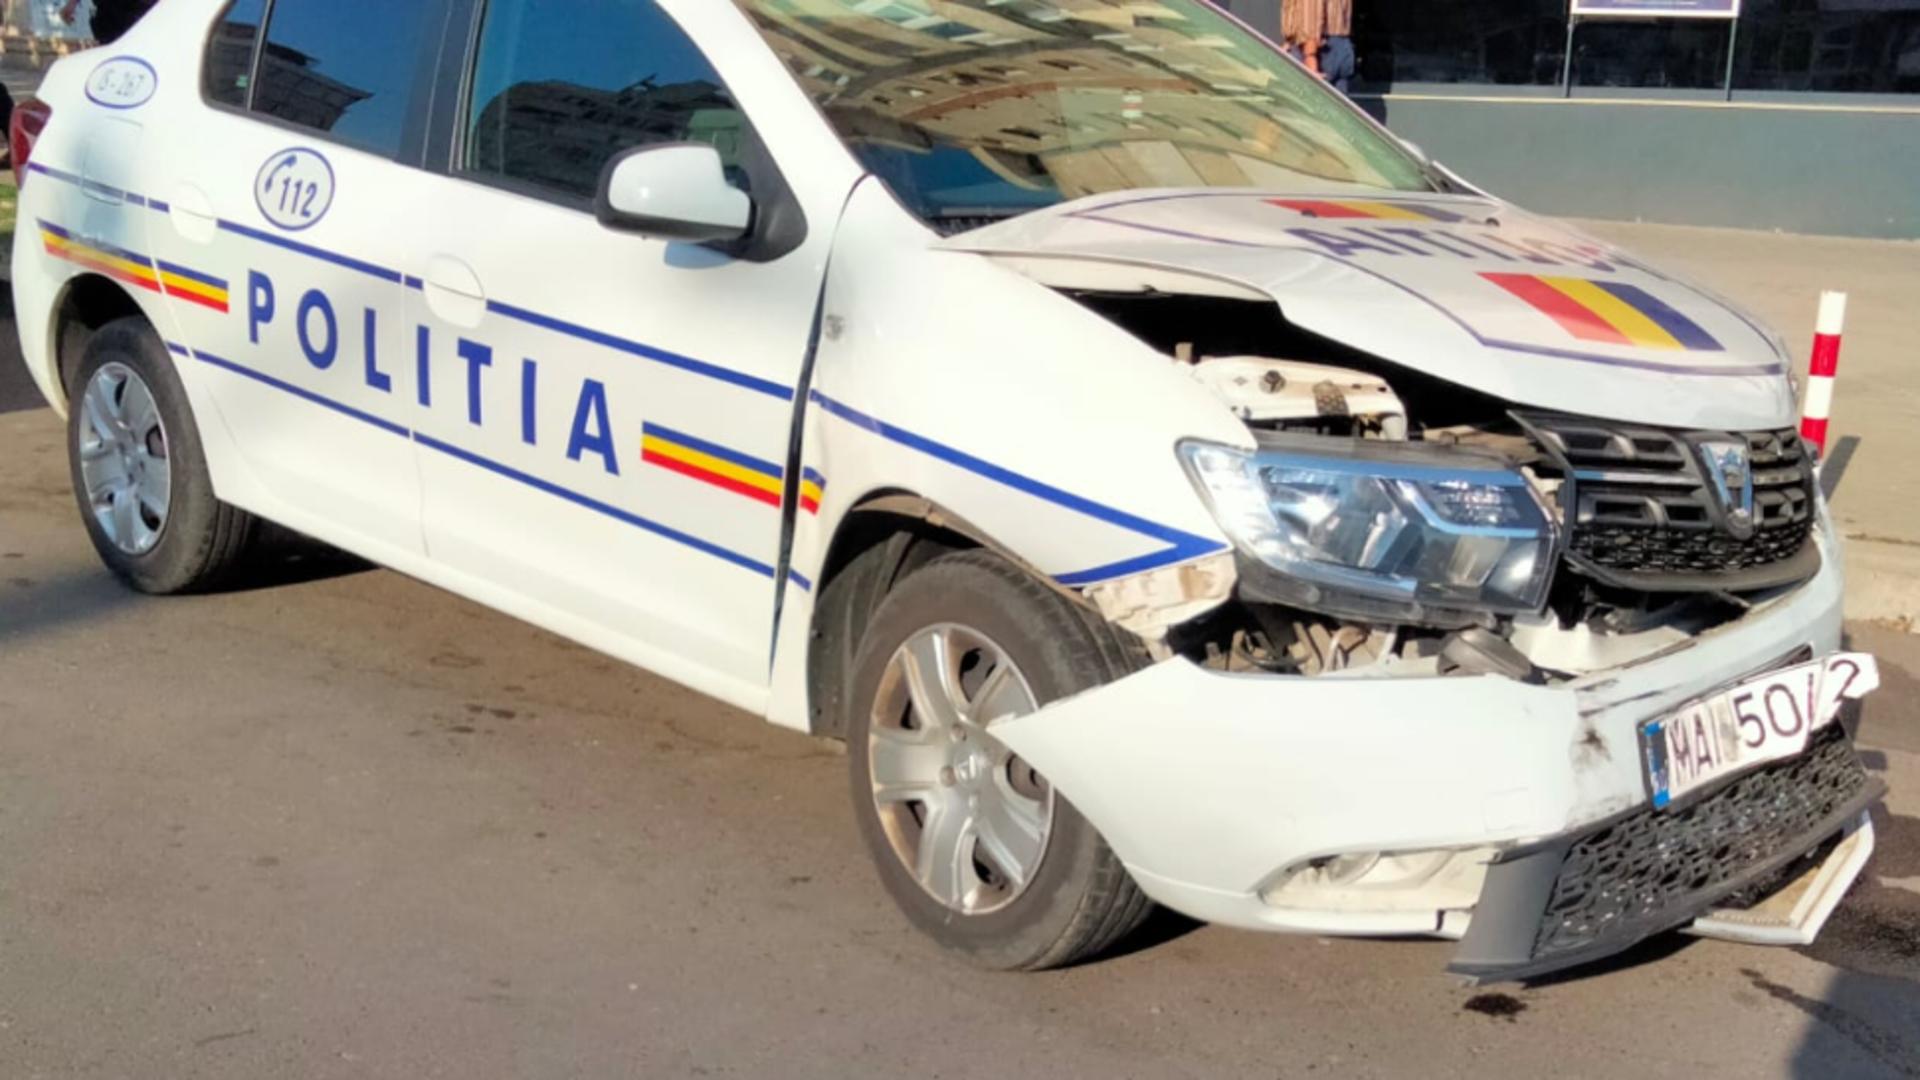 Carambol în Iași cu 3 mașini: O autospecială de poliție a provocat coliziunea – Primele imagini cu accidentul